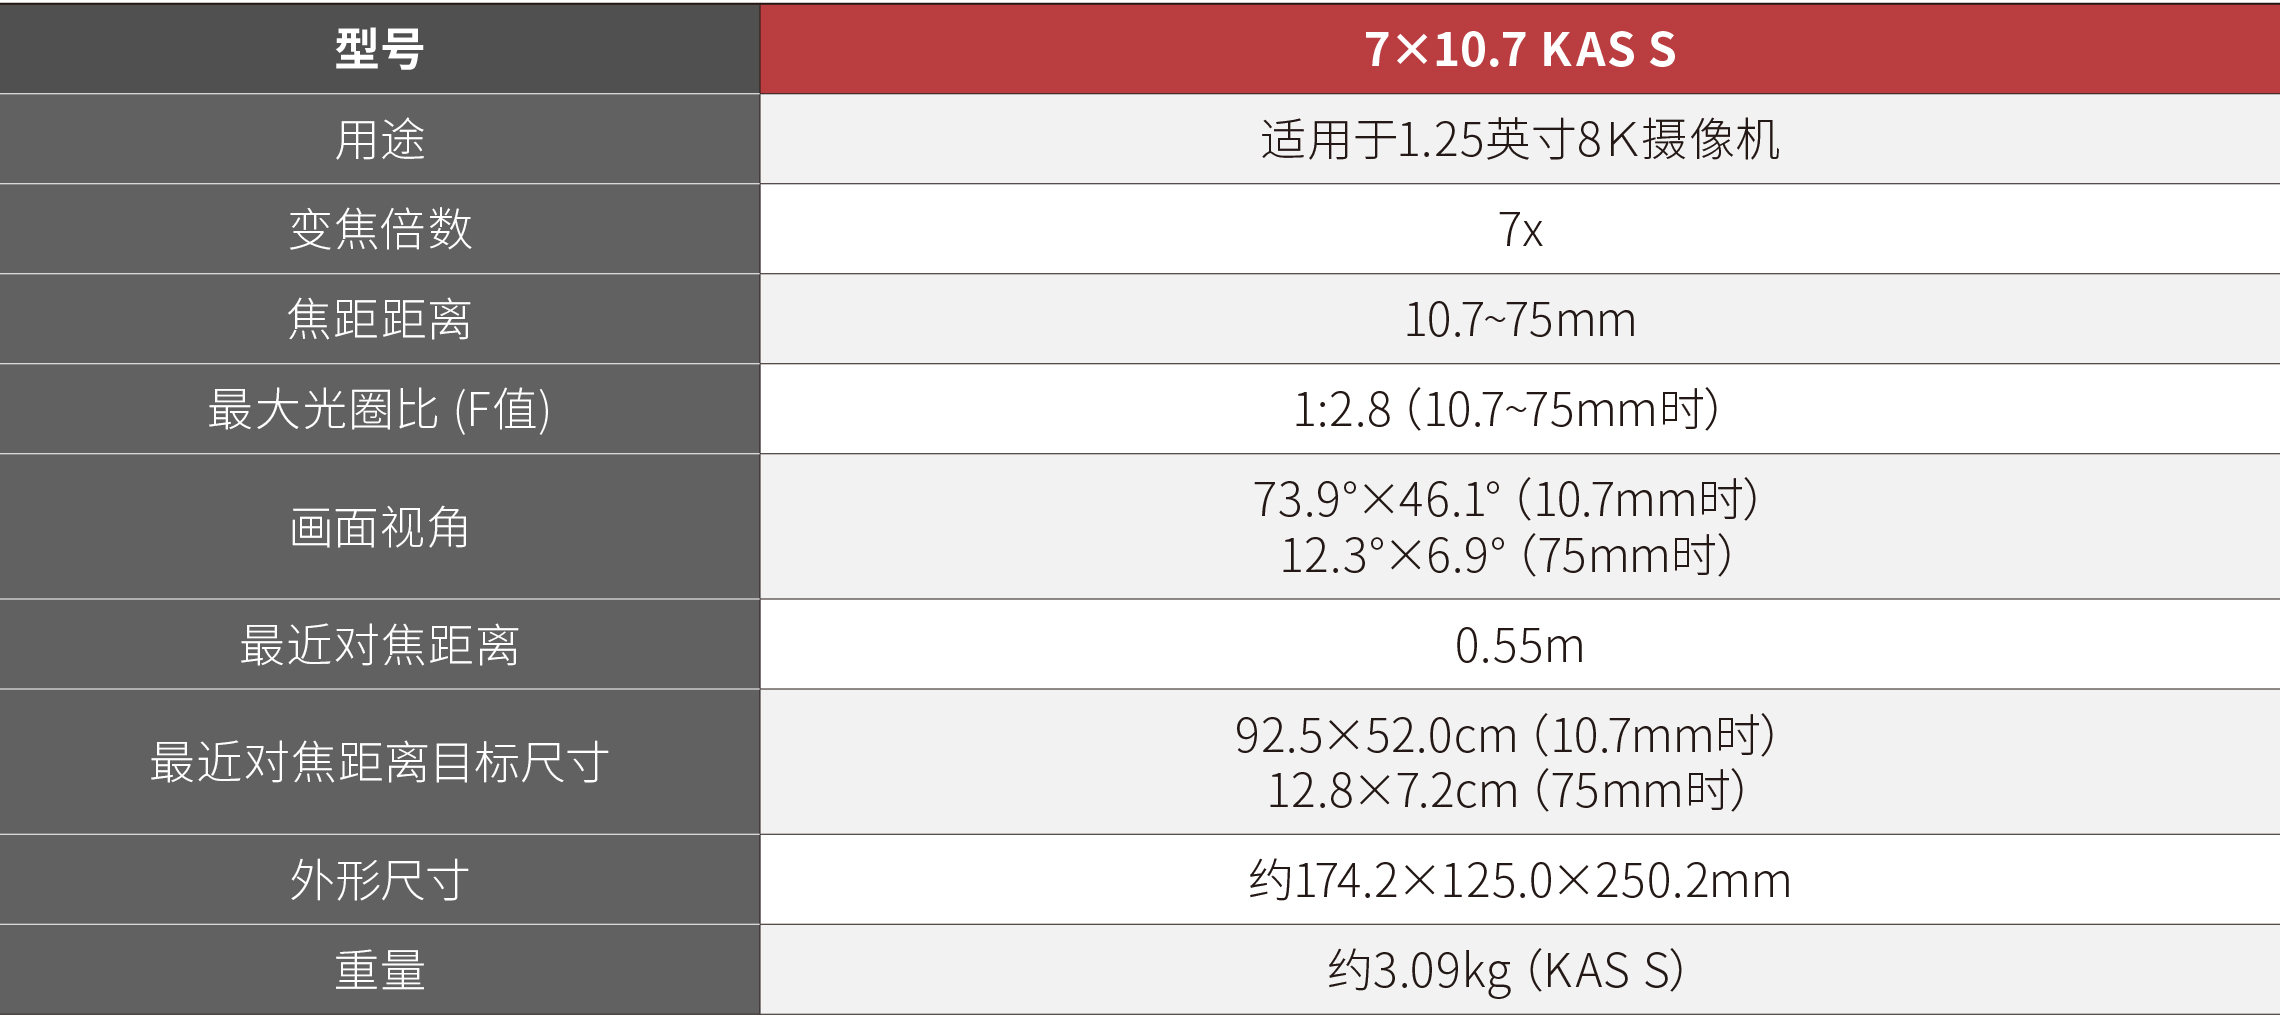 7×10.7 KAS S